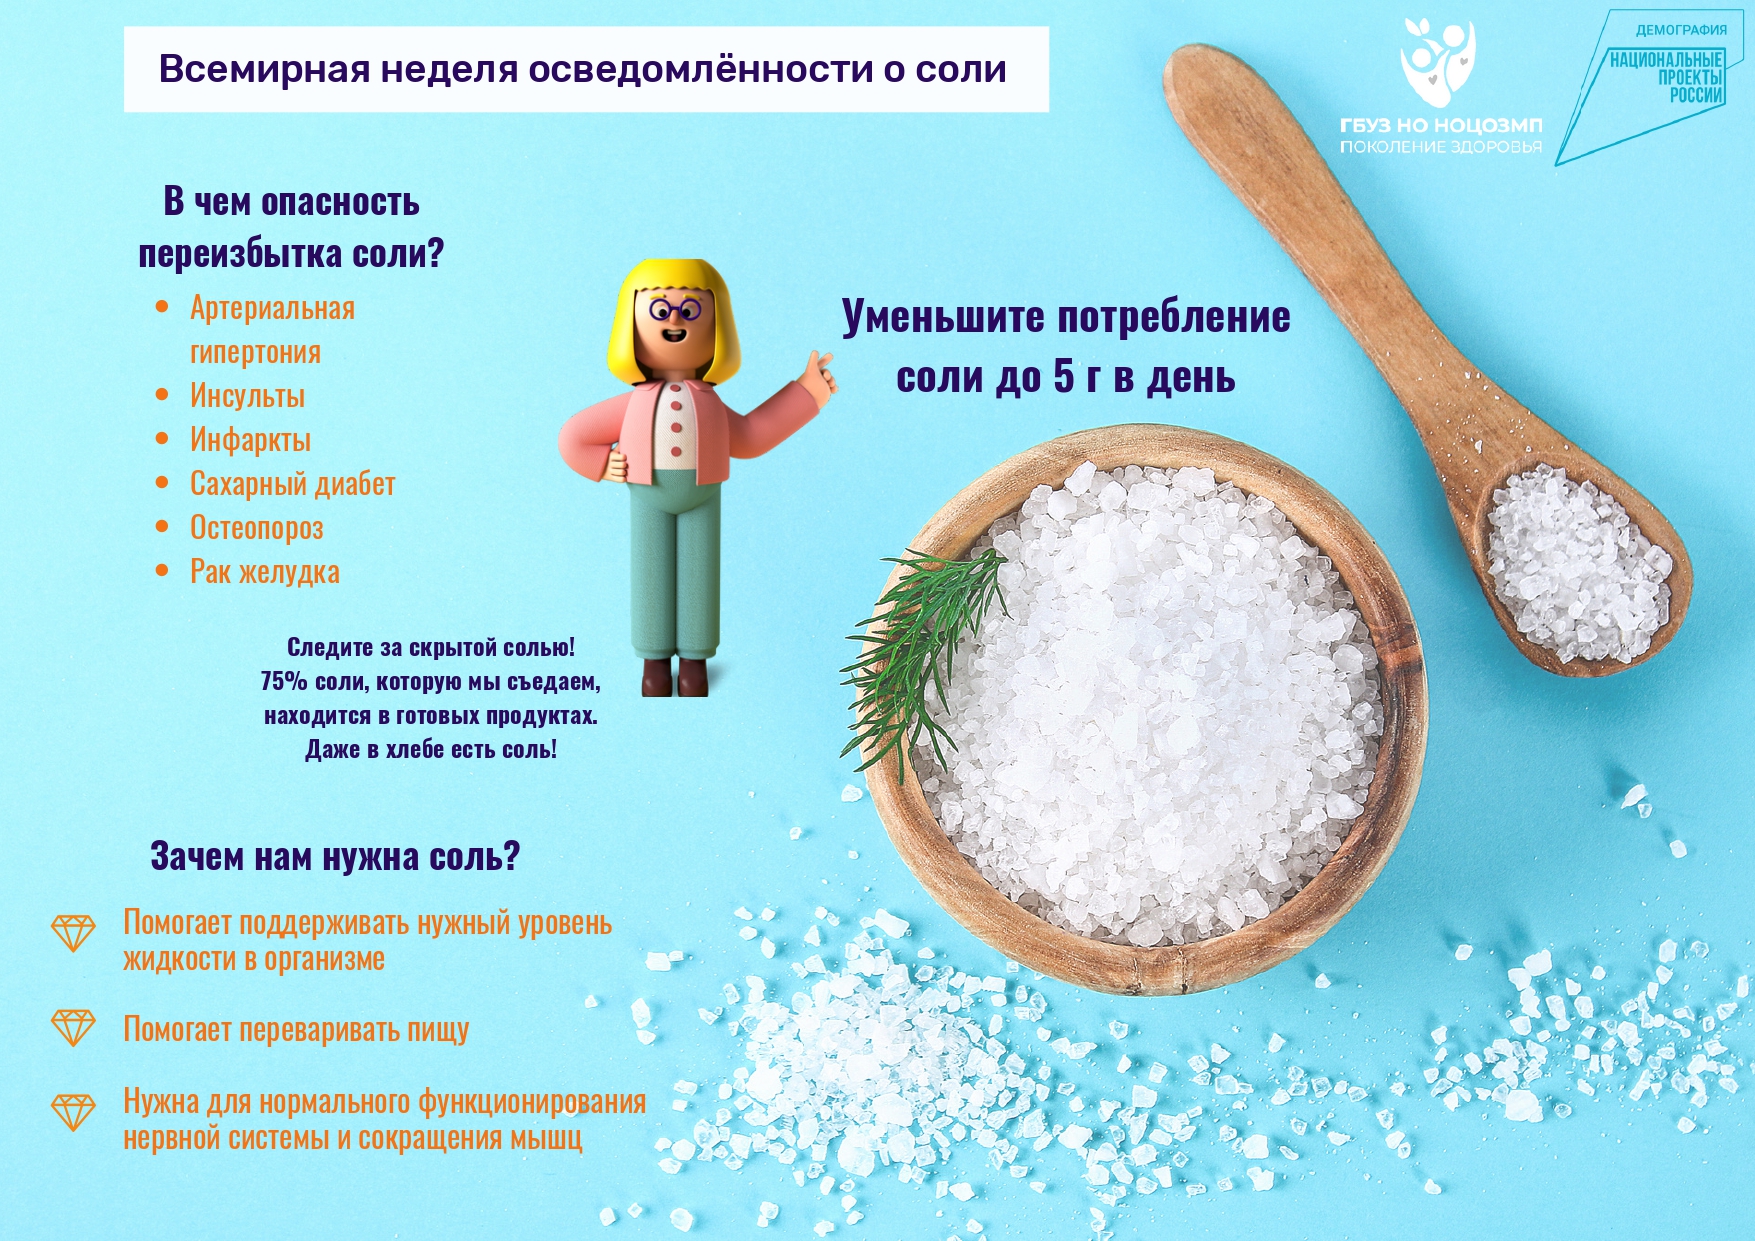 Можно ли употреблять соль на диете, какие существуют ограничения